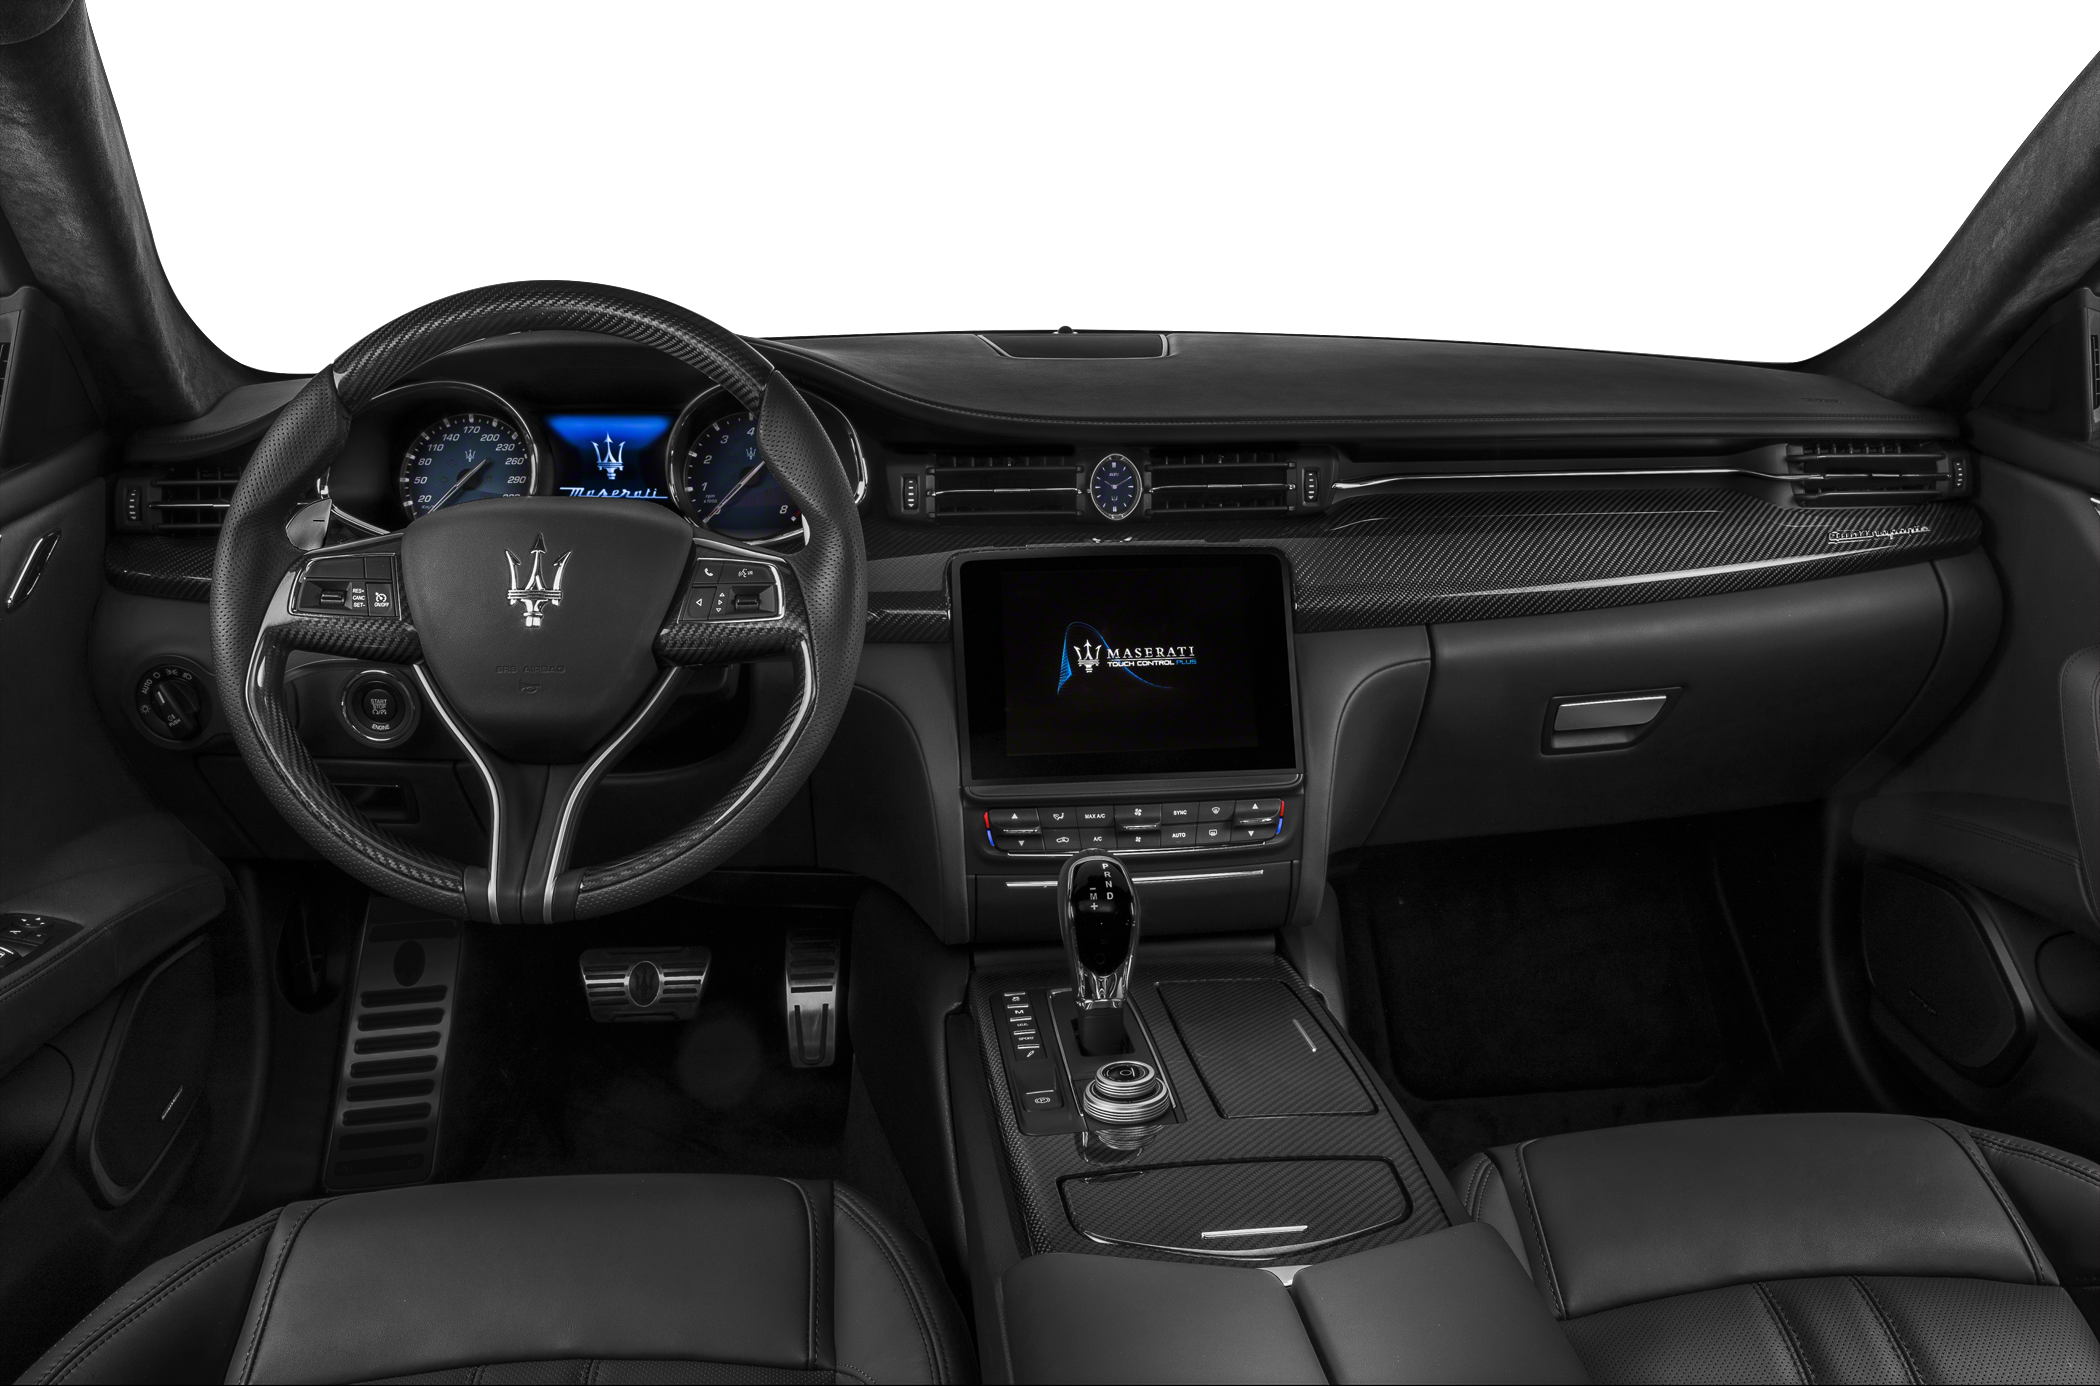 2017 Maserati Quattroporte